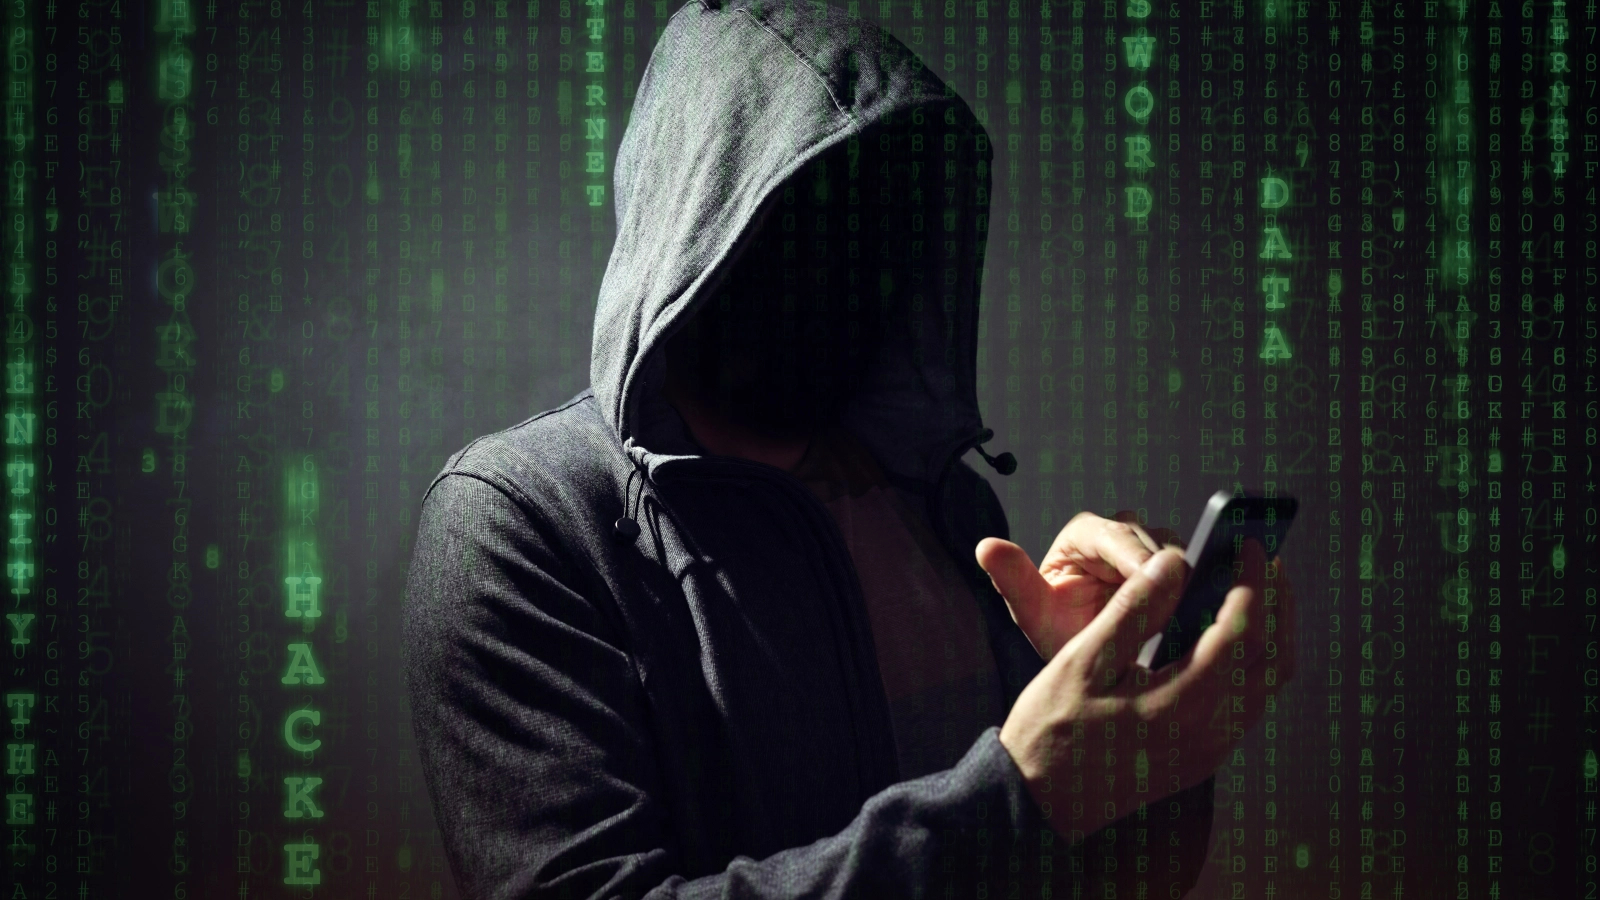 Cảnh báo: Hàng triệu người dùng smartphone đang gặp nguy hiểm vì lỗ hổng bảo mật - Ảnh 2.